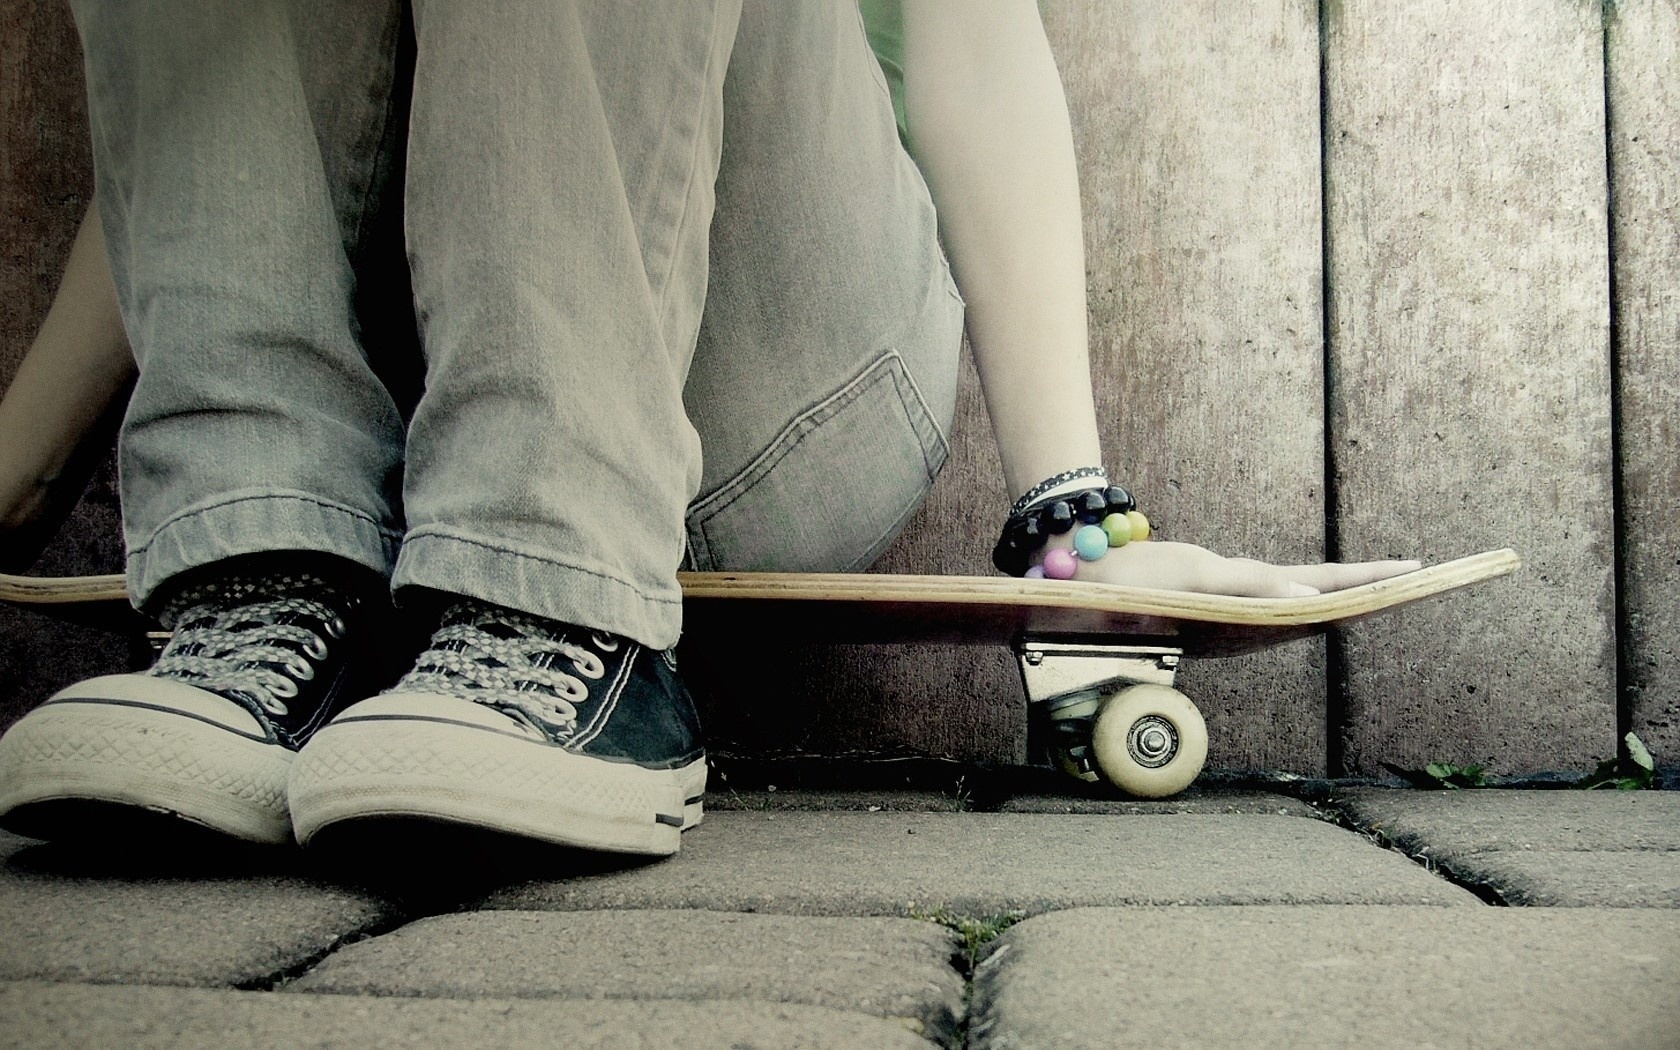 fond d'écran de skateboards fille,longboard,planche à roulette,longboard,chaussure,chaussure de skate